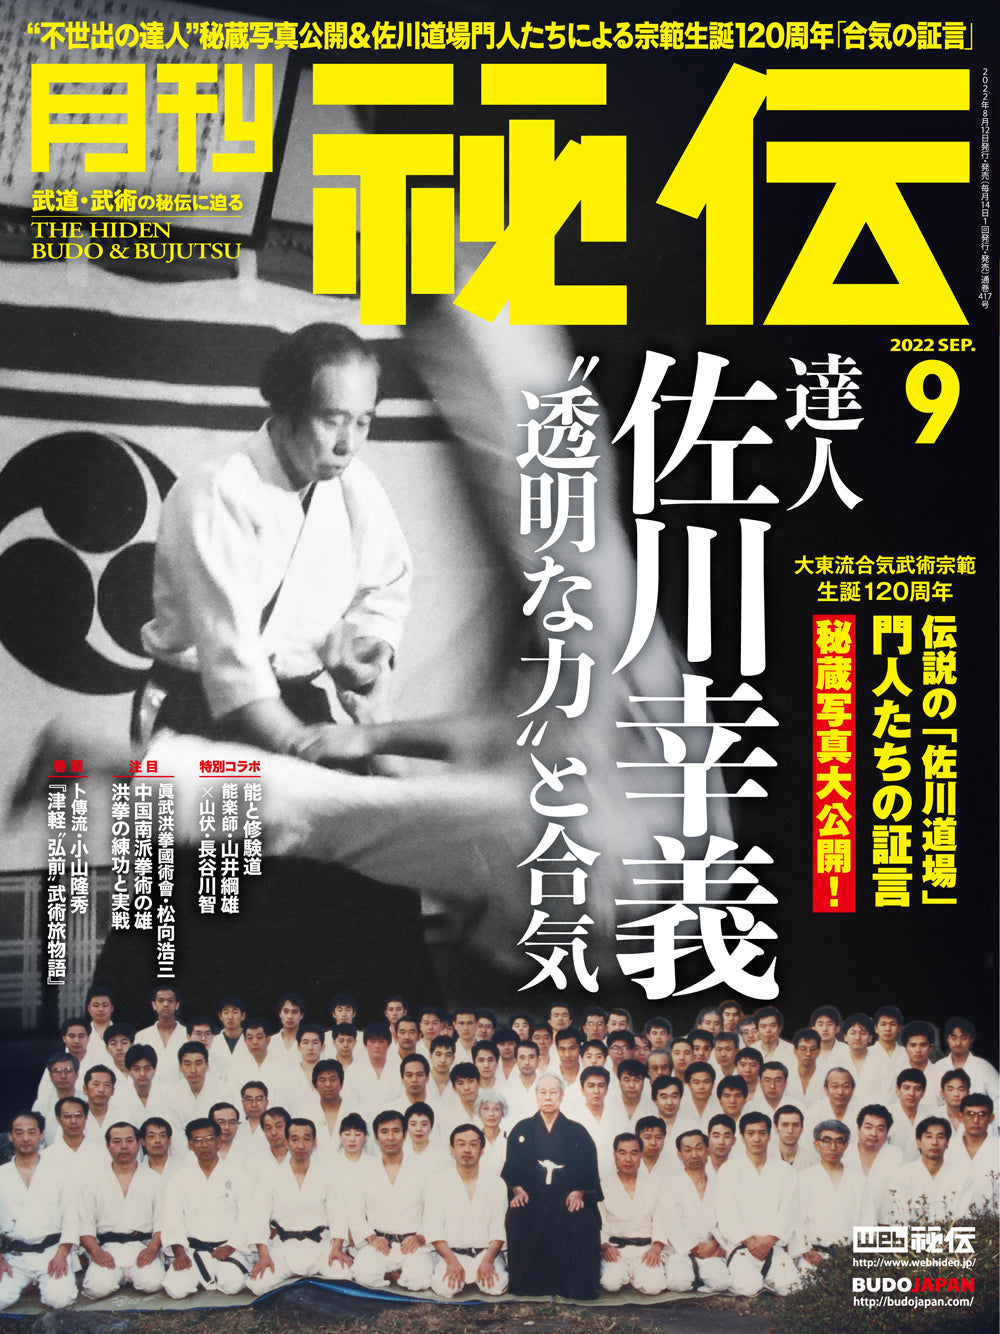 Hiden Budo & Bujutsu Magazine Sept 2022